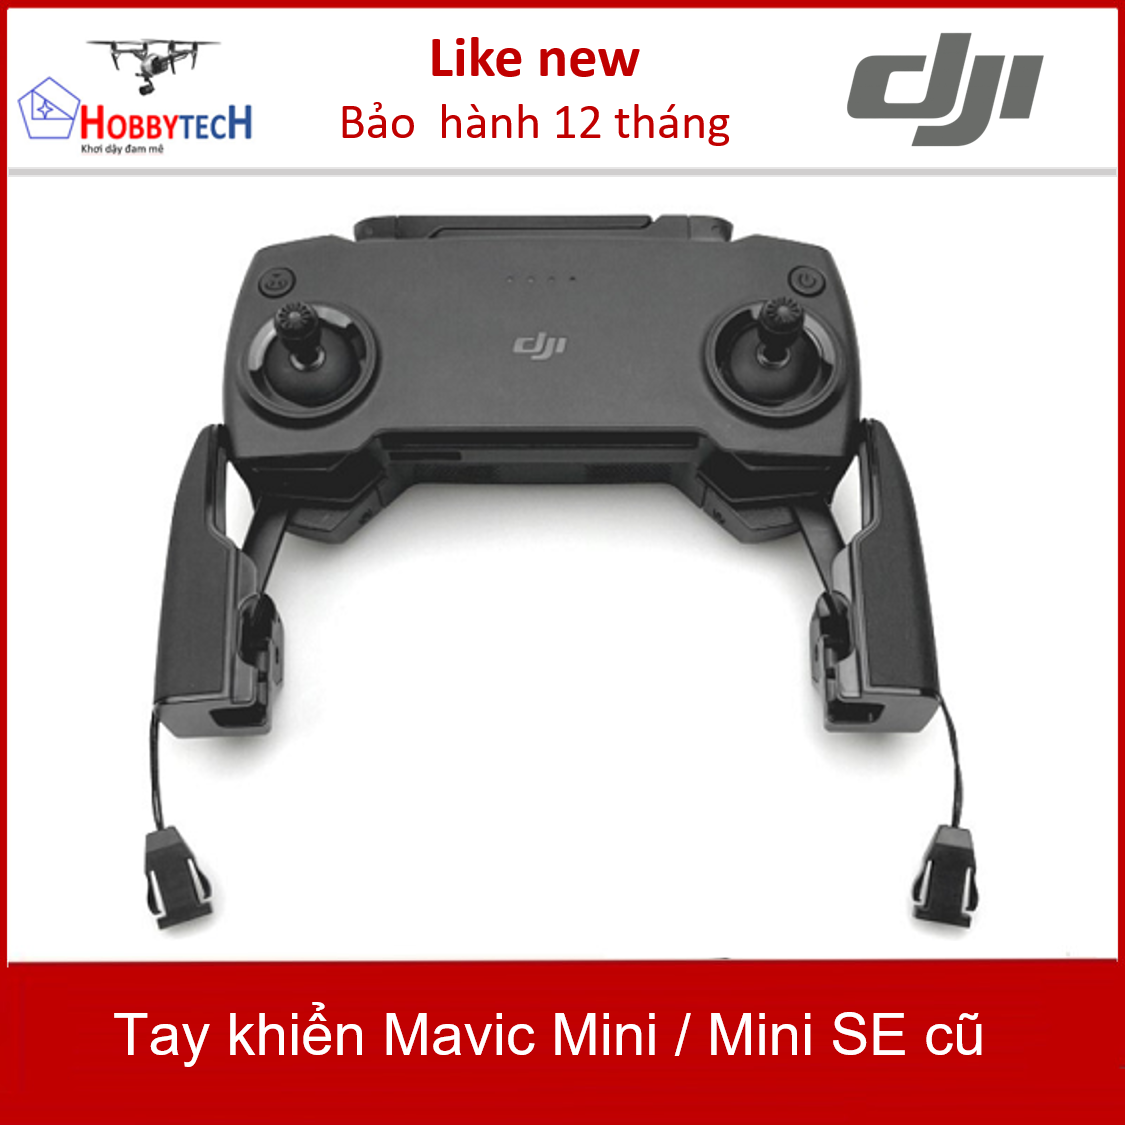 Tay khiển Mavic Mini / Mini SE cũ – Hàng chính hãng DJI